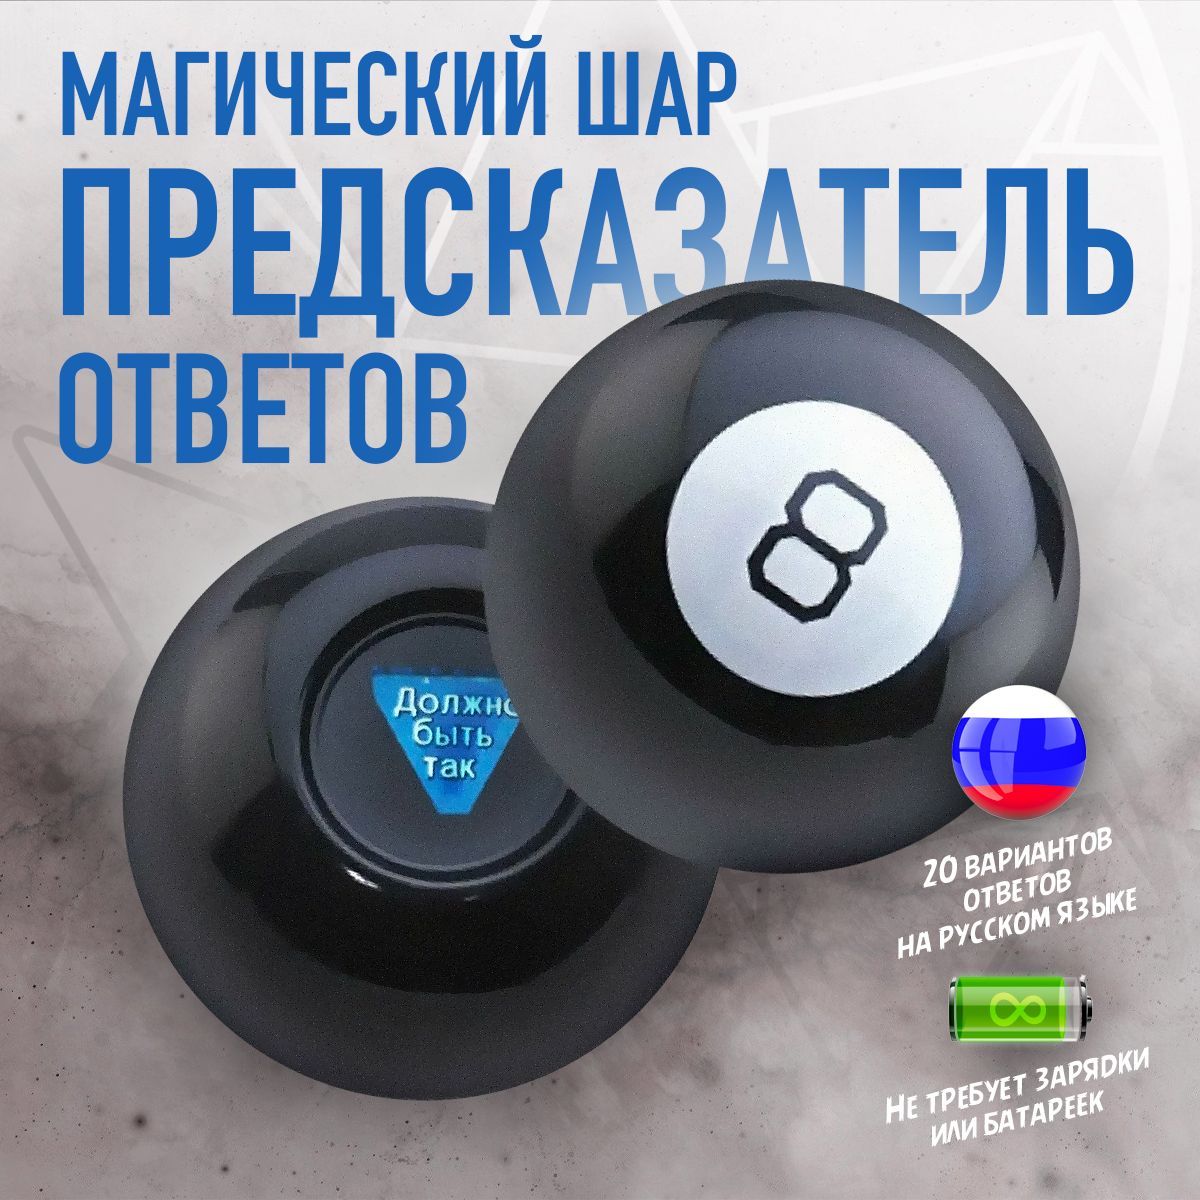 Магический шар предсказатель Magic ball 8 (Диаметр 10 см) на русском языке